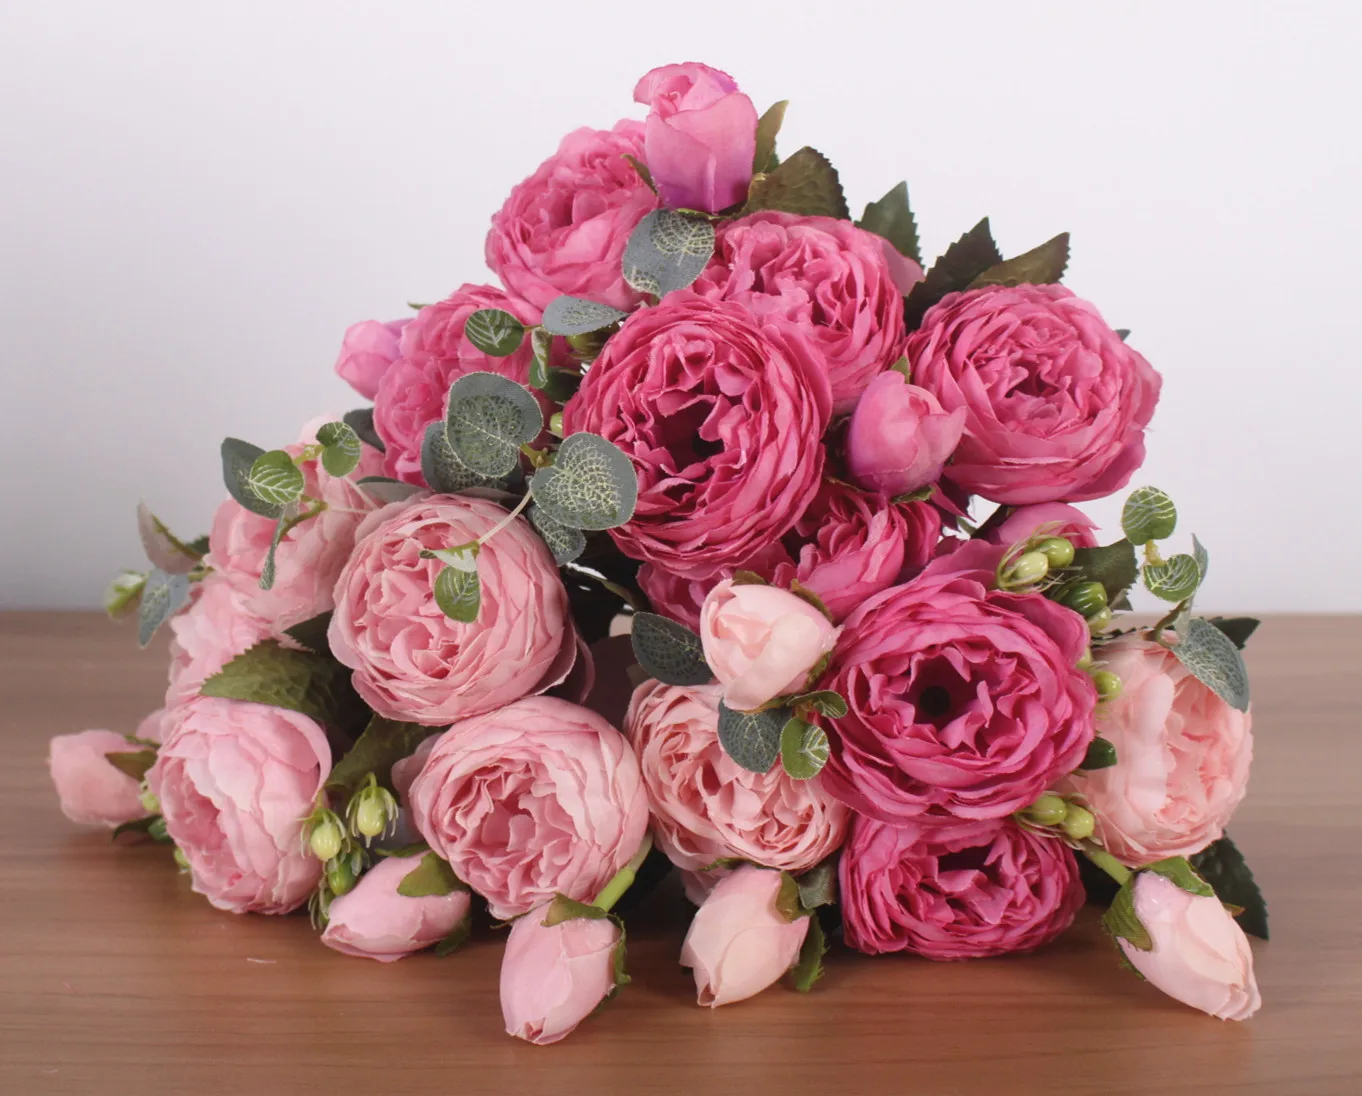 CHUXIN имитация шелковой розы пиона семейные вечерние украшения для гостиной искусственный цветок для свадьбы фотостудия реквизит для фотографий 1 шт